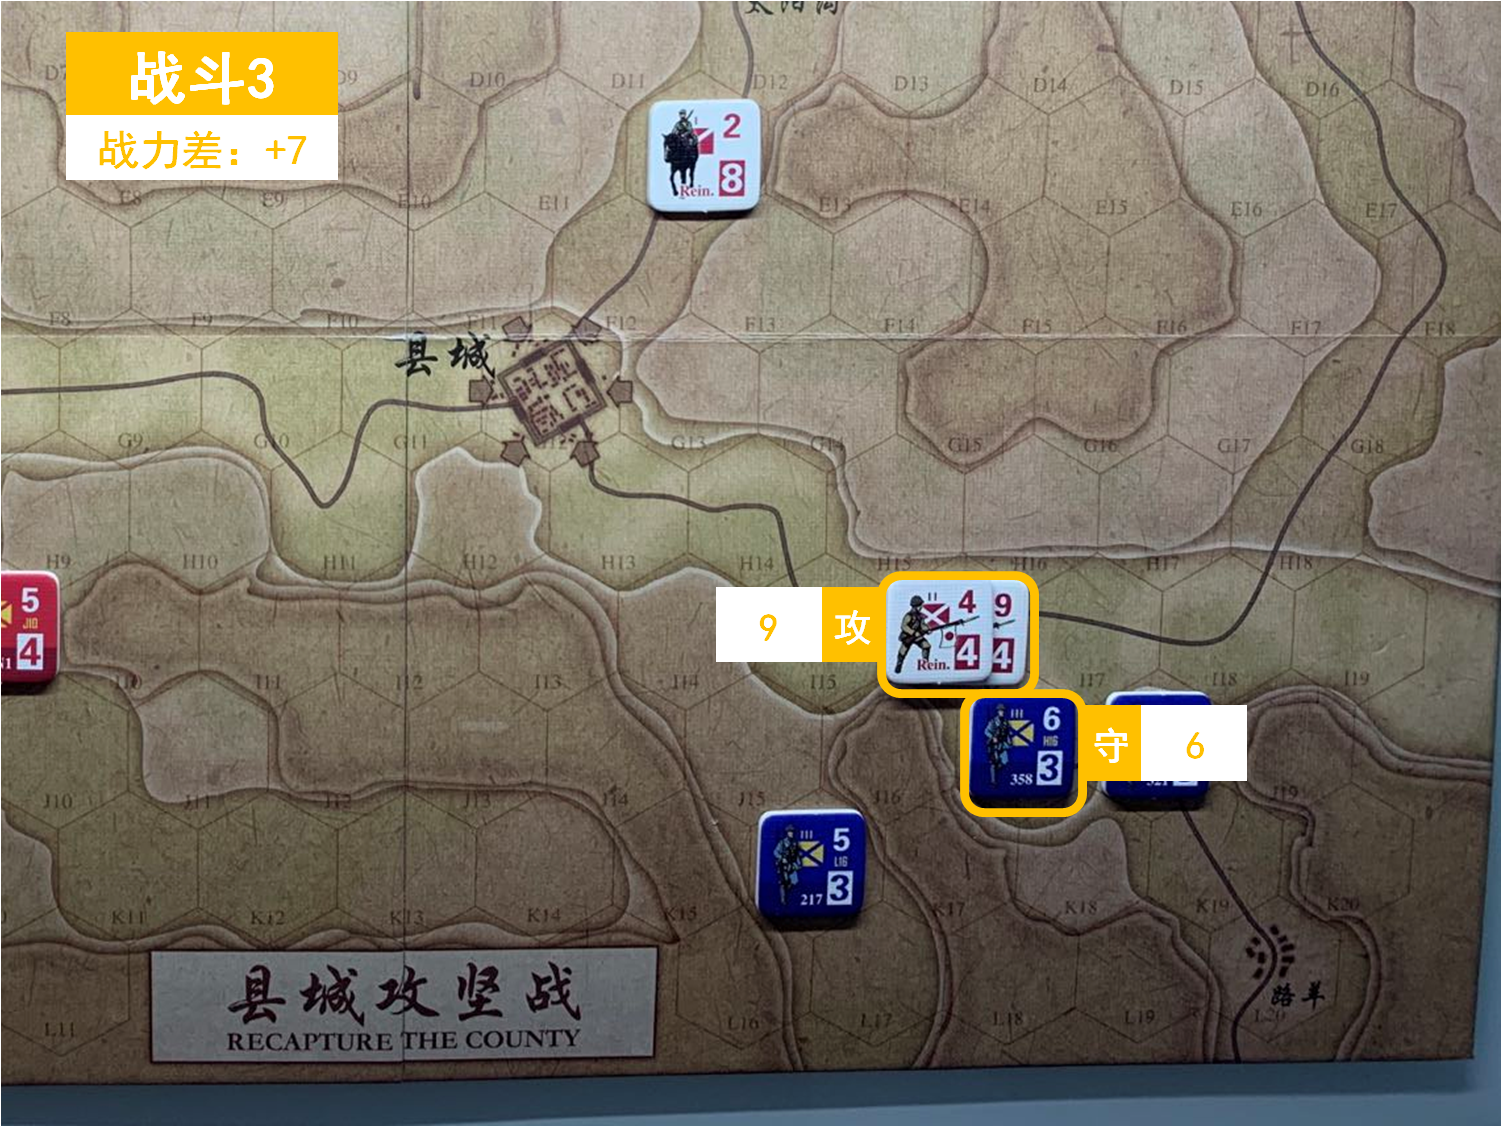 第三回合 日方戰鬥階段 戰鬥3 戰鬥力差值